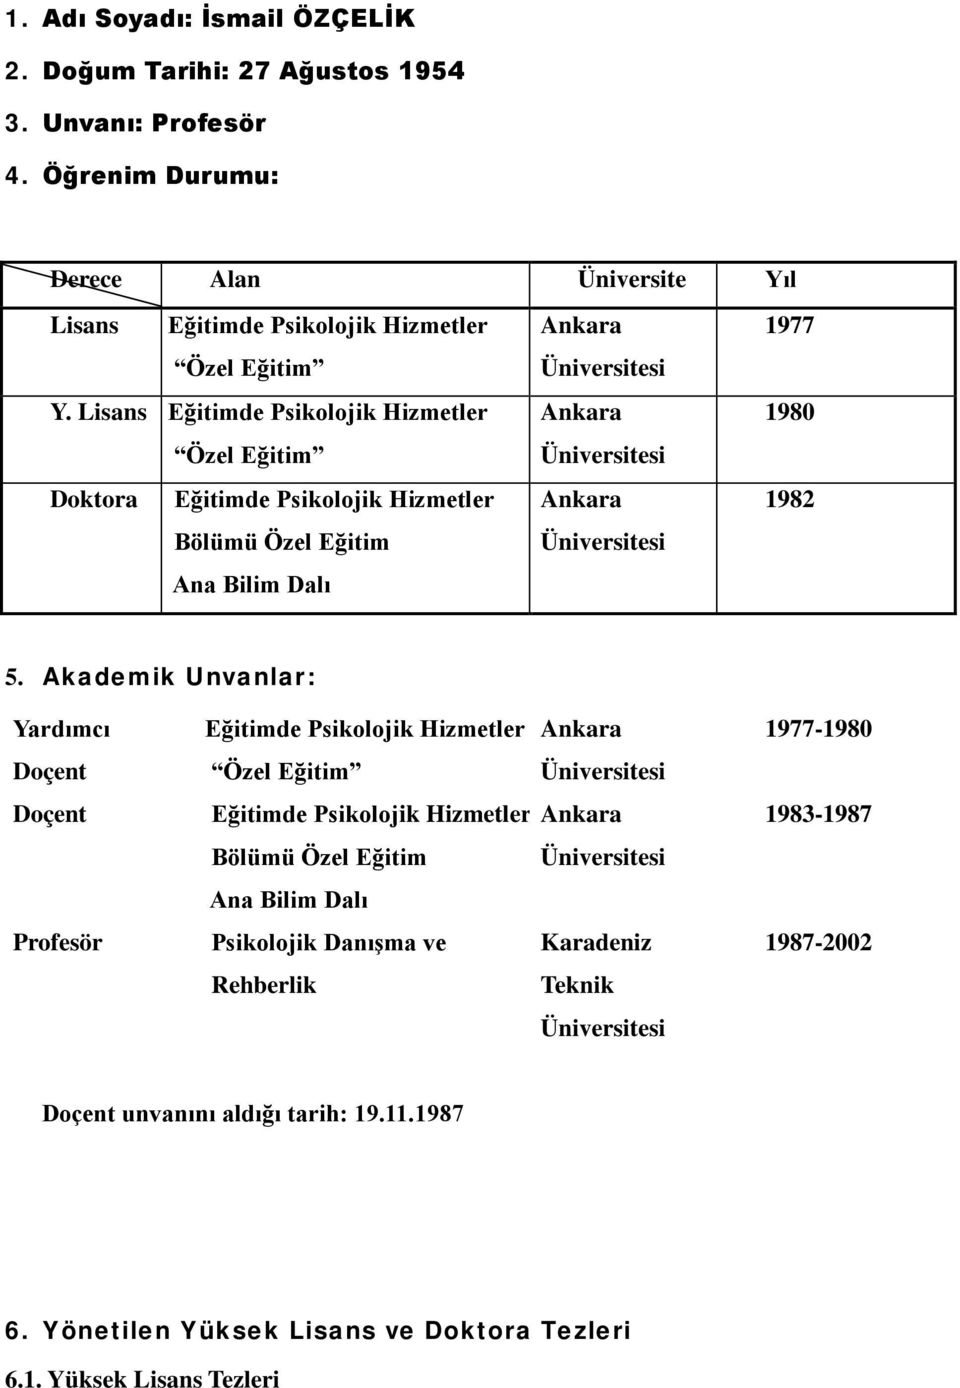 5. Akademik Unvanlar: Yardımcı Eğitimde Psikolojik Hizmetler Ankara 1977-1980 Doçent Özel Eğitim Üniversitesi Doçent Eğitimde Psikolojik Hizmetler Ankara 1983-1987 Bölümü Özel Eğitim Üniversitesi